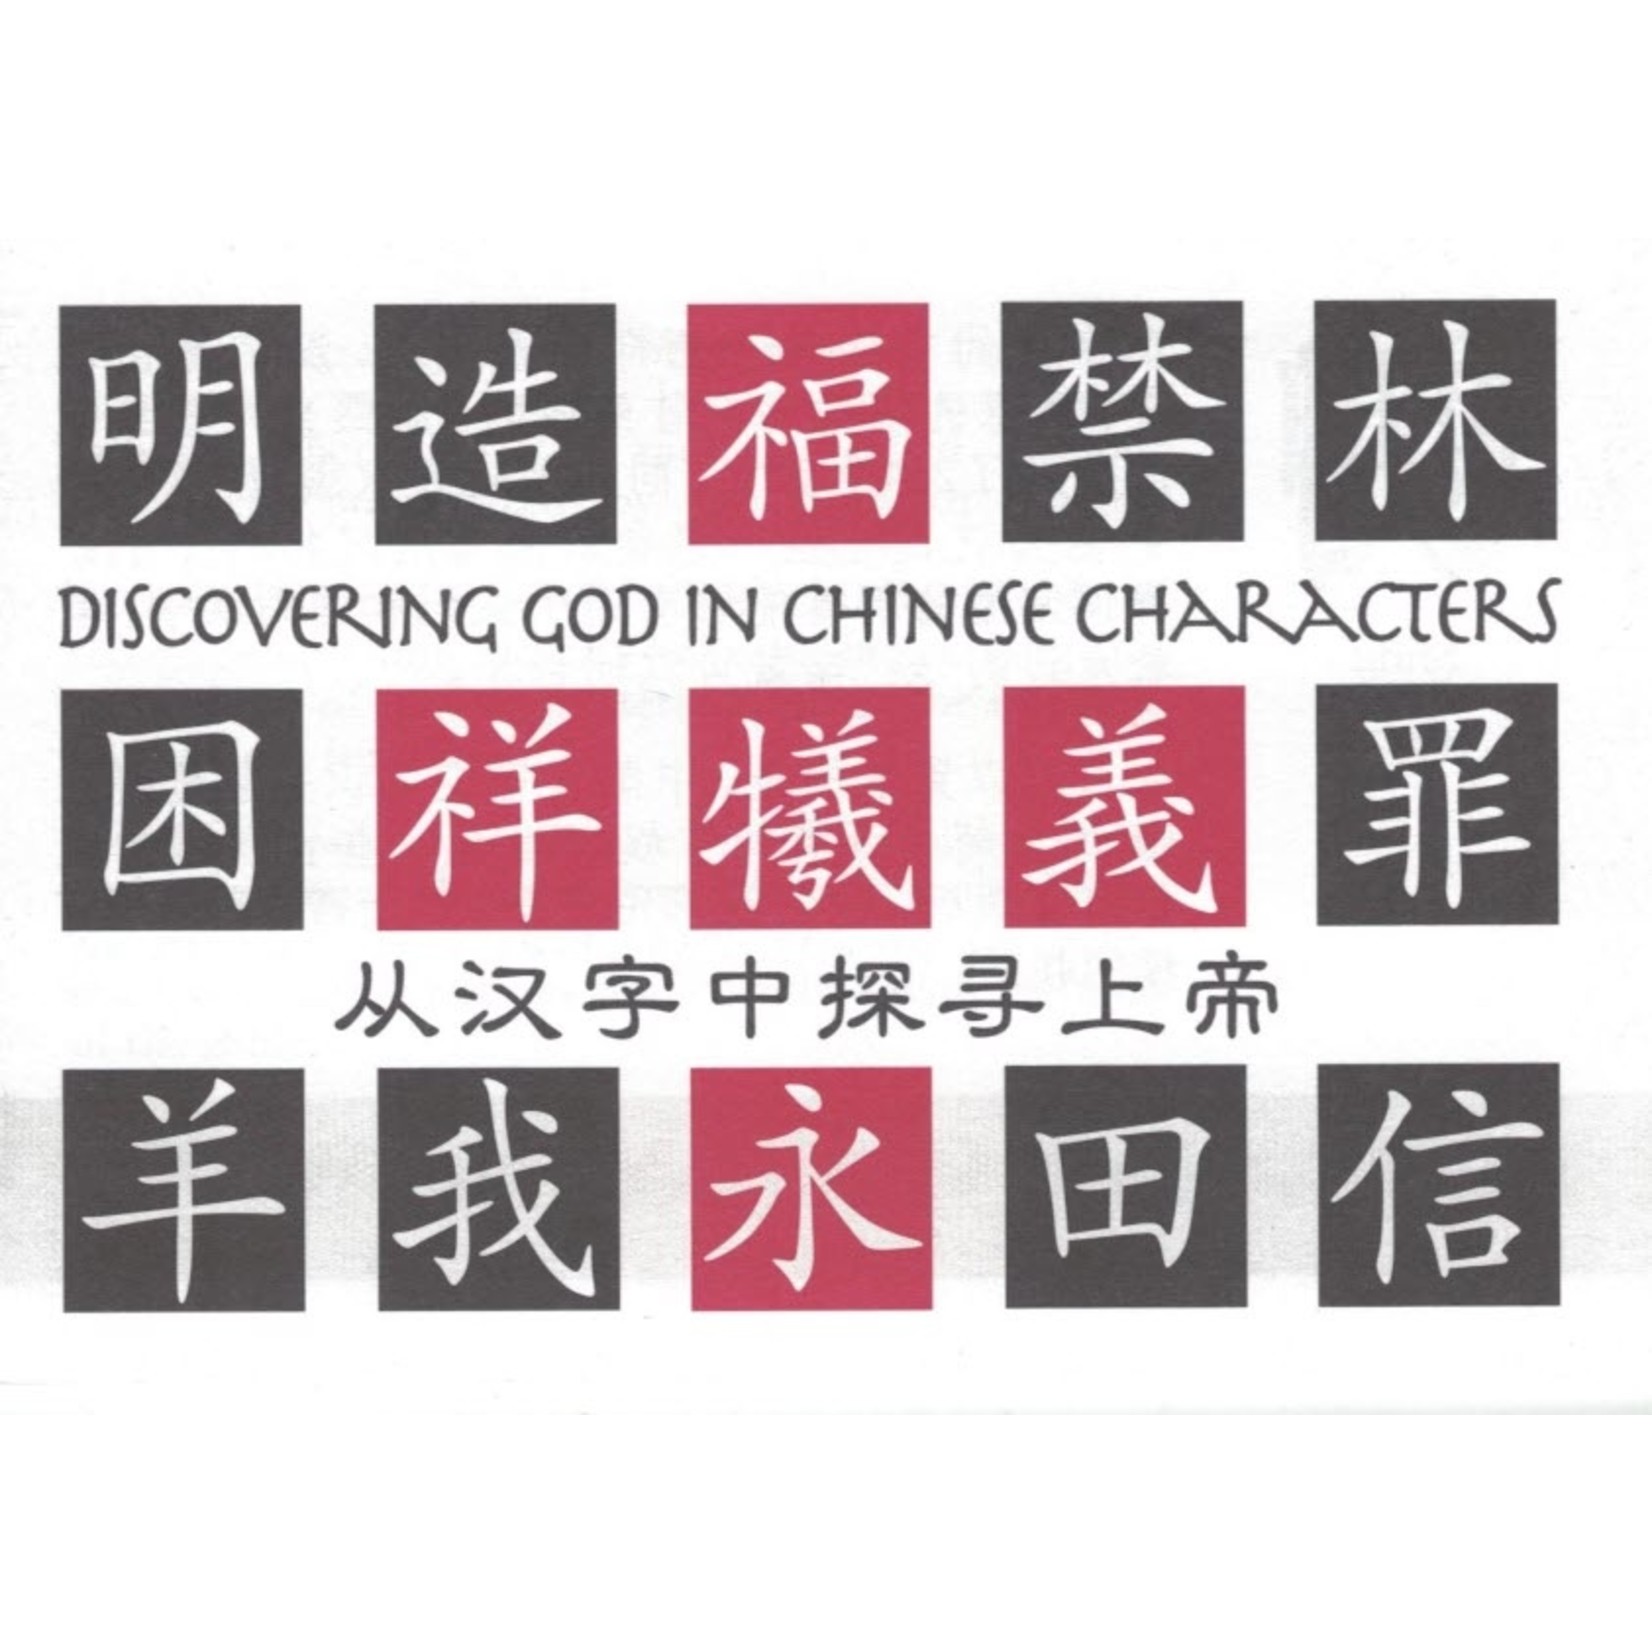 基督使者協會 Ambassadors for Christ 從漢字中探尋上帝（中英對照）（簡體）